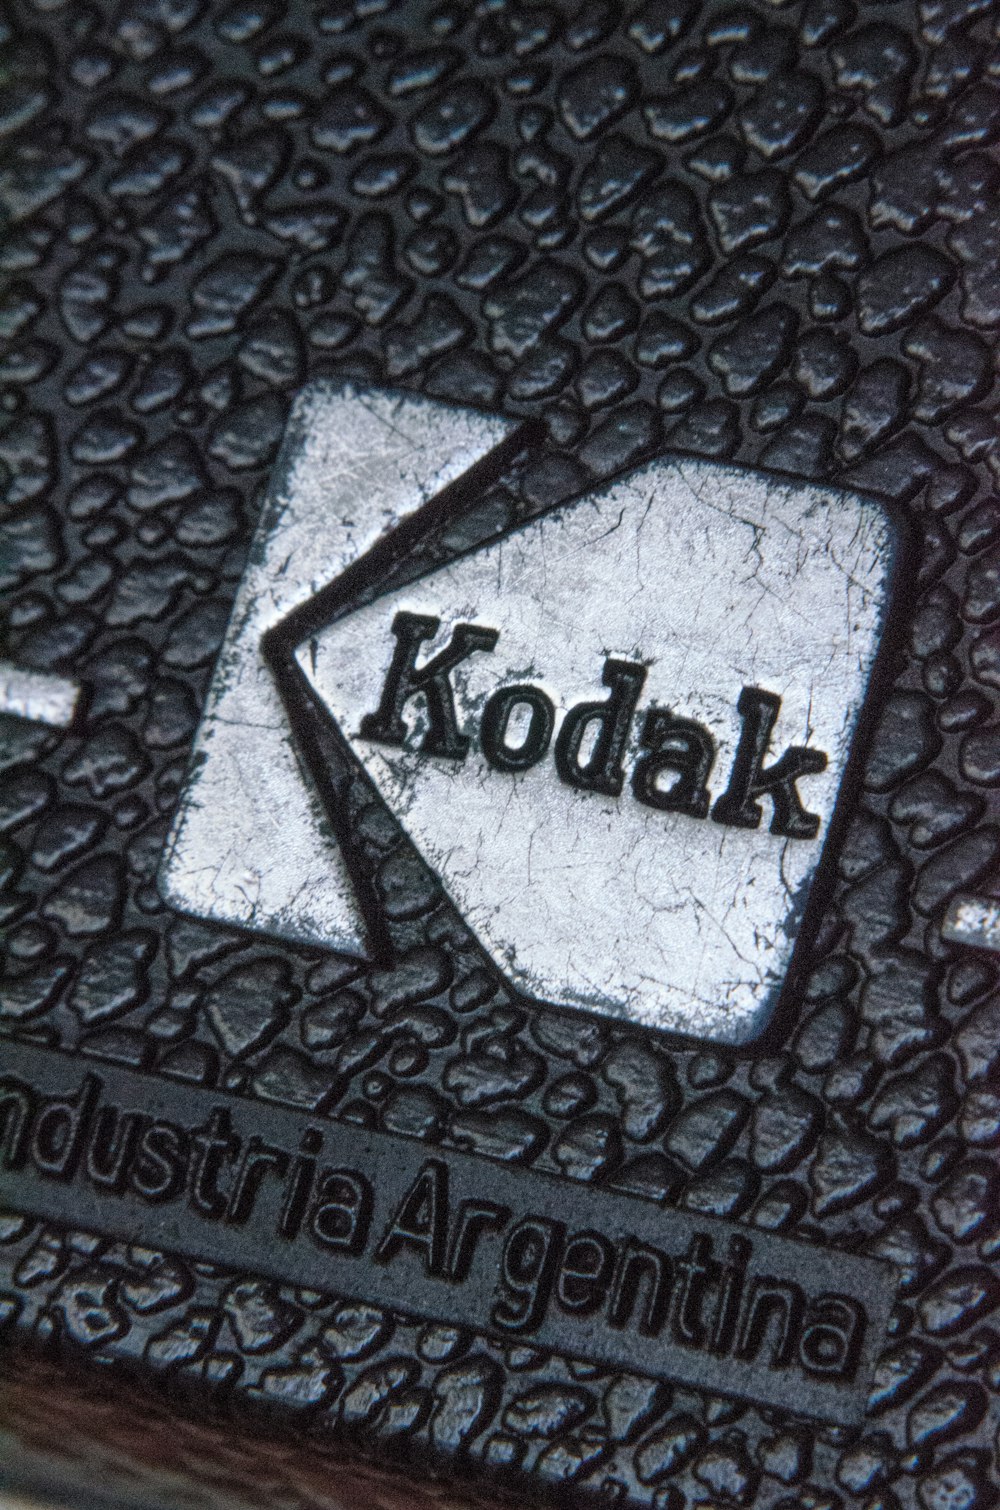 Nahaufnahme eines Kodak Logos auf schwarzem Hintergrund